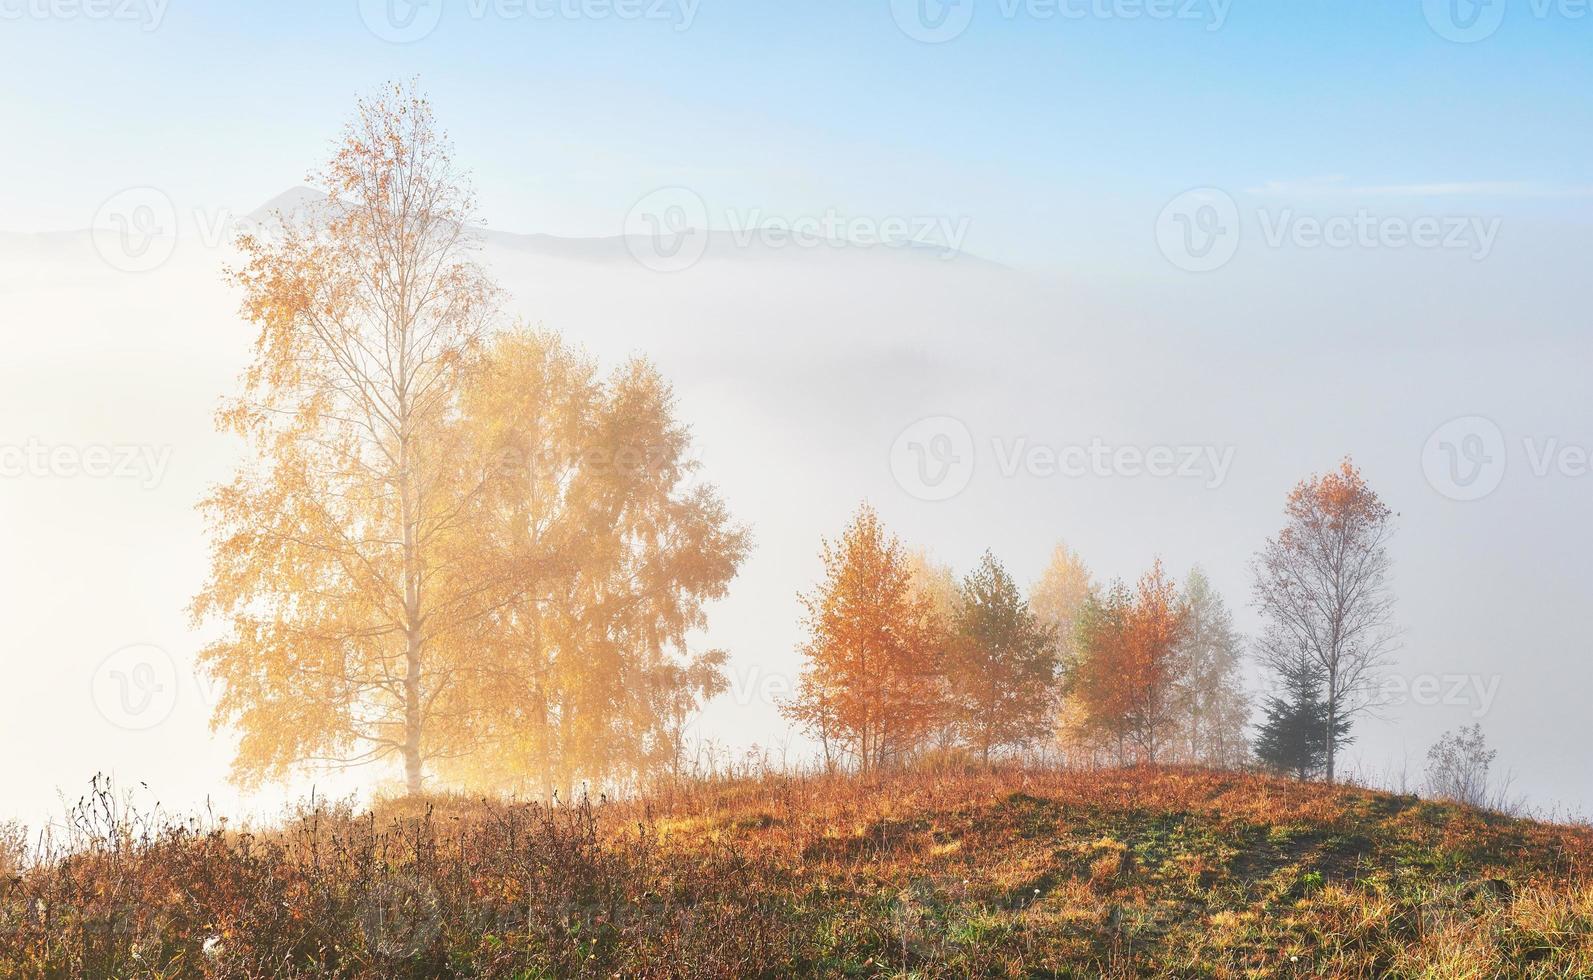 albero lucido su un pendio collinare con travi soleggiate nella valle di montagna ricoperta di nebbia. splendida scena mattutina. foglie autunnali rosse e gialle. carpazi, ucraina, europa. scopri il mondo della bellezza foto